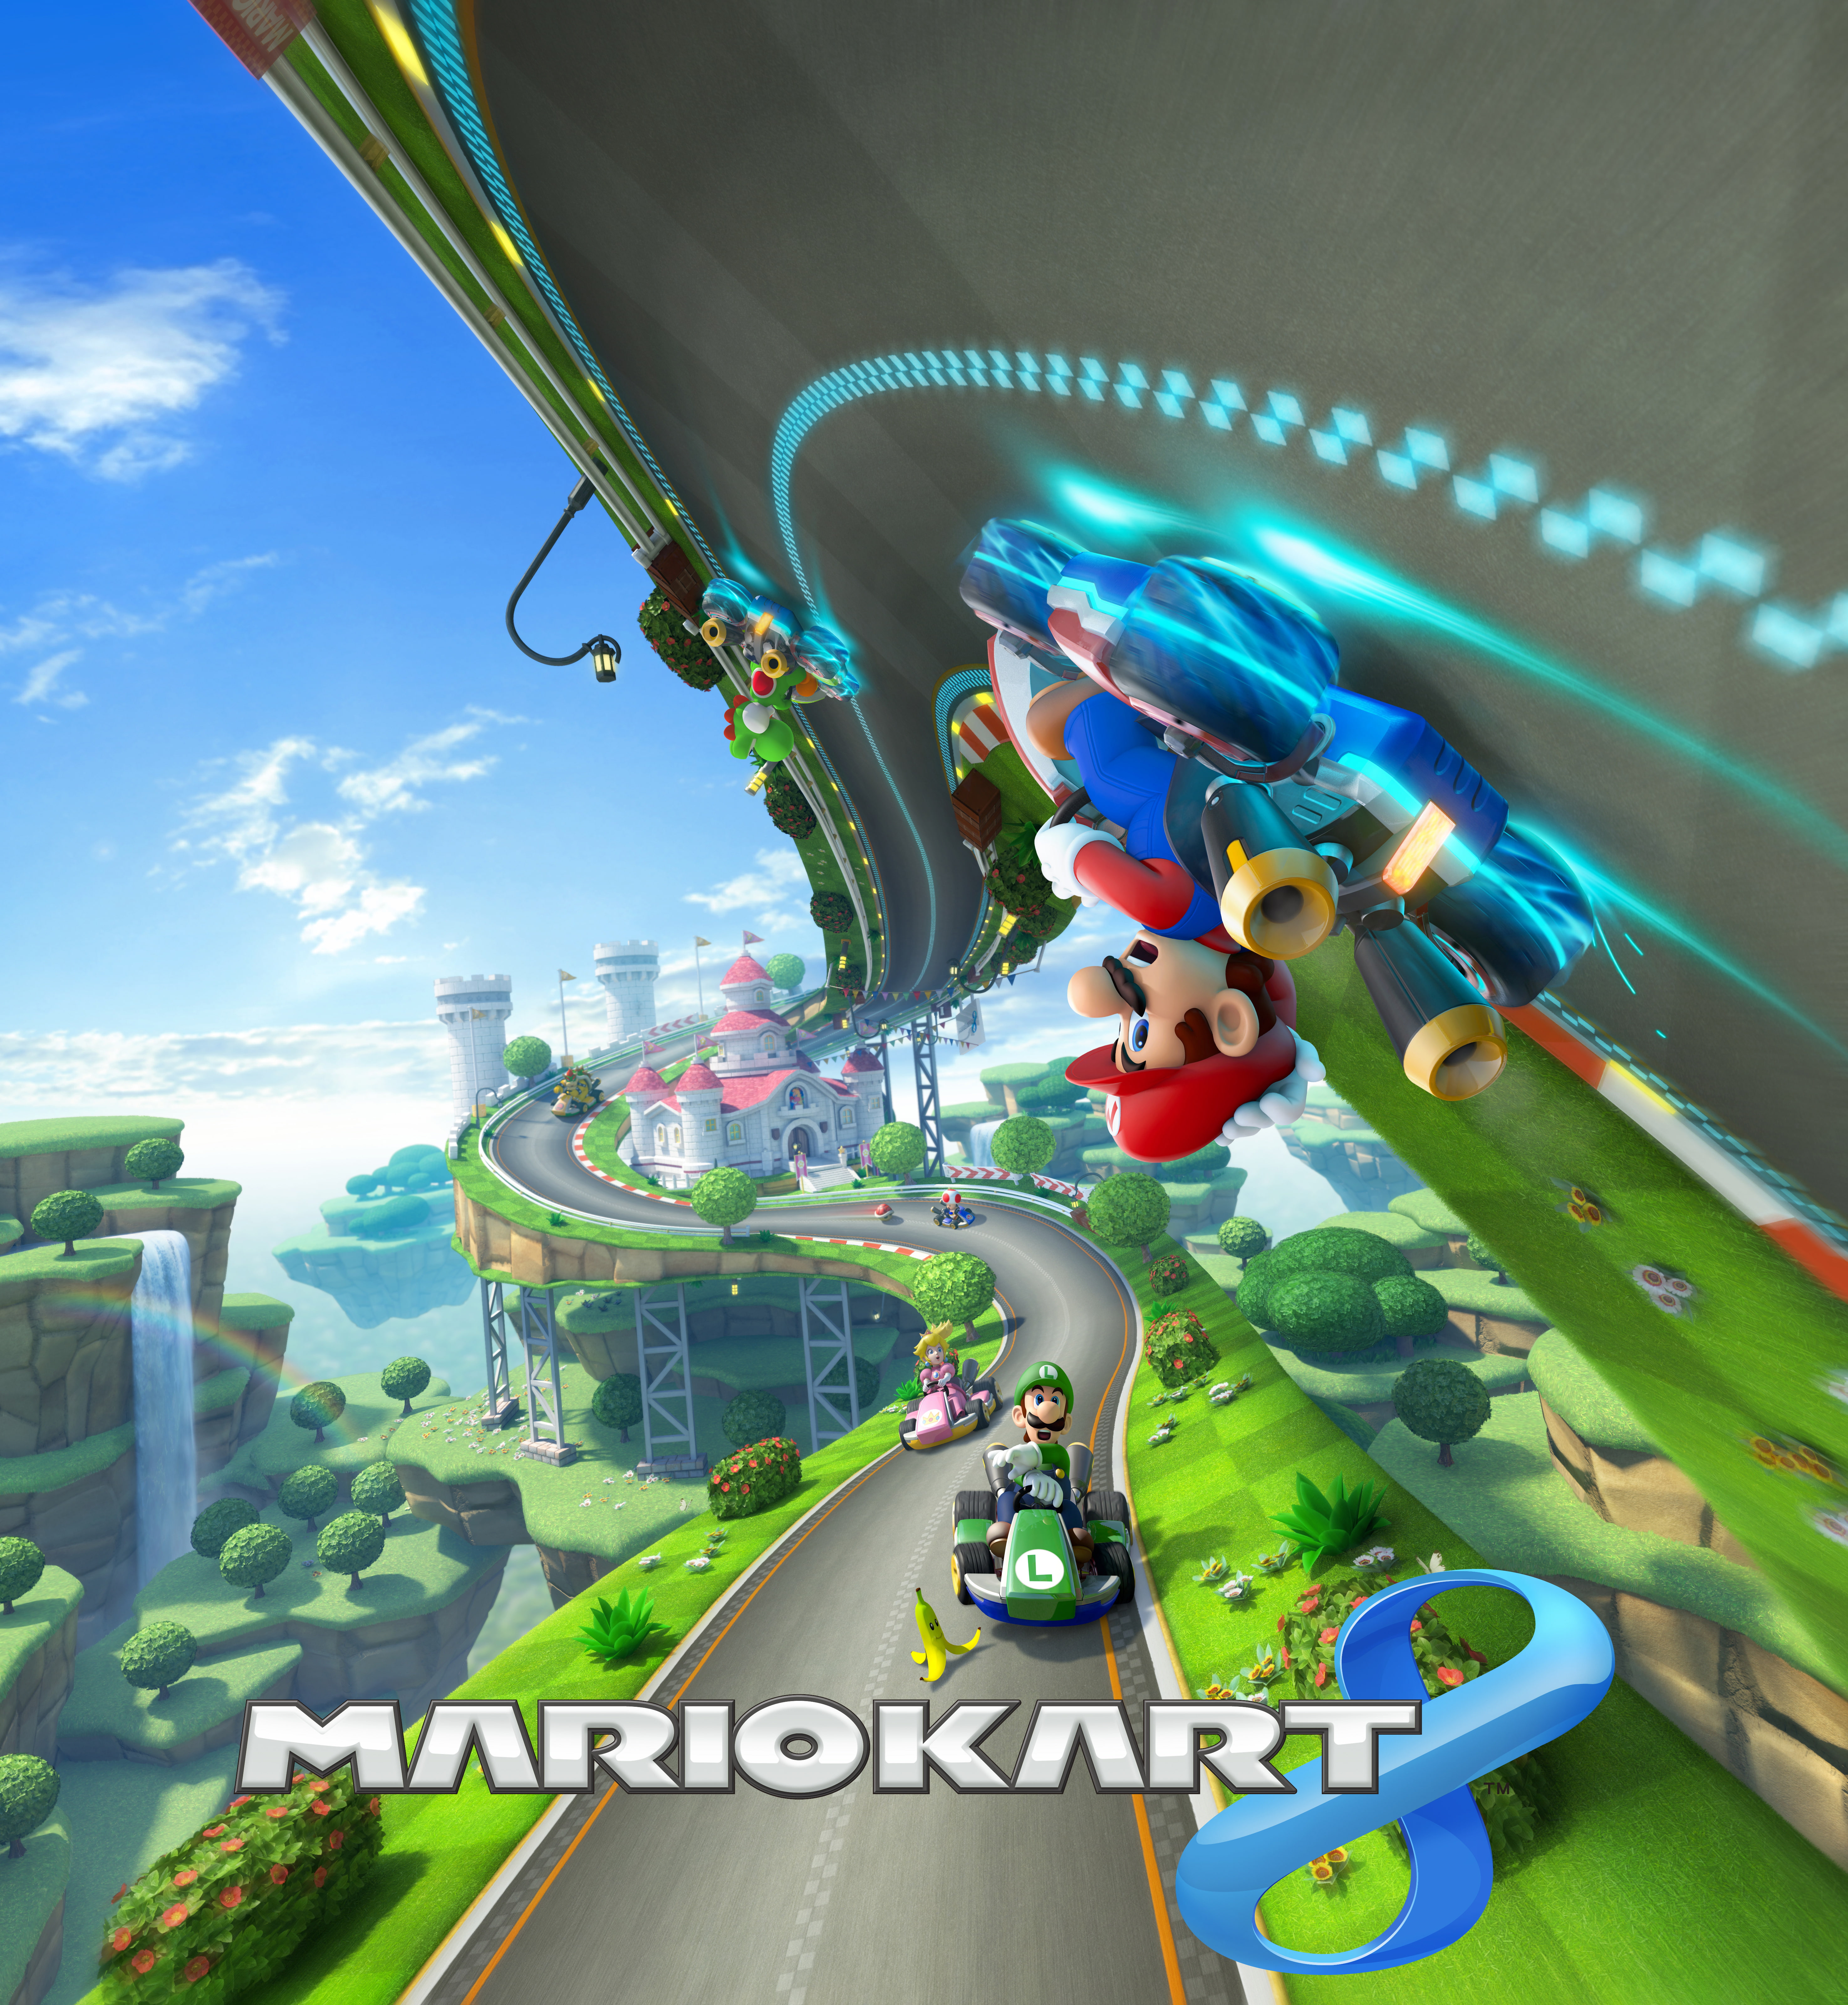 Mario Kart 3D wallpaper, Mario Kart 8 Deluxe, Wii U, Nintendo Switch